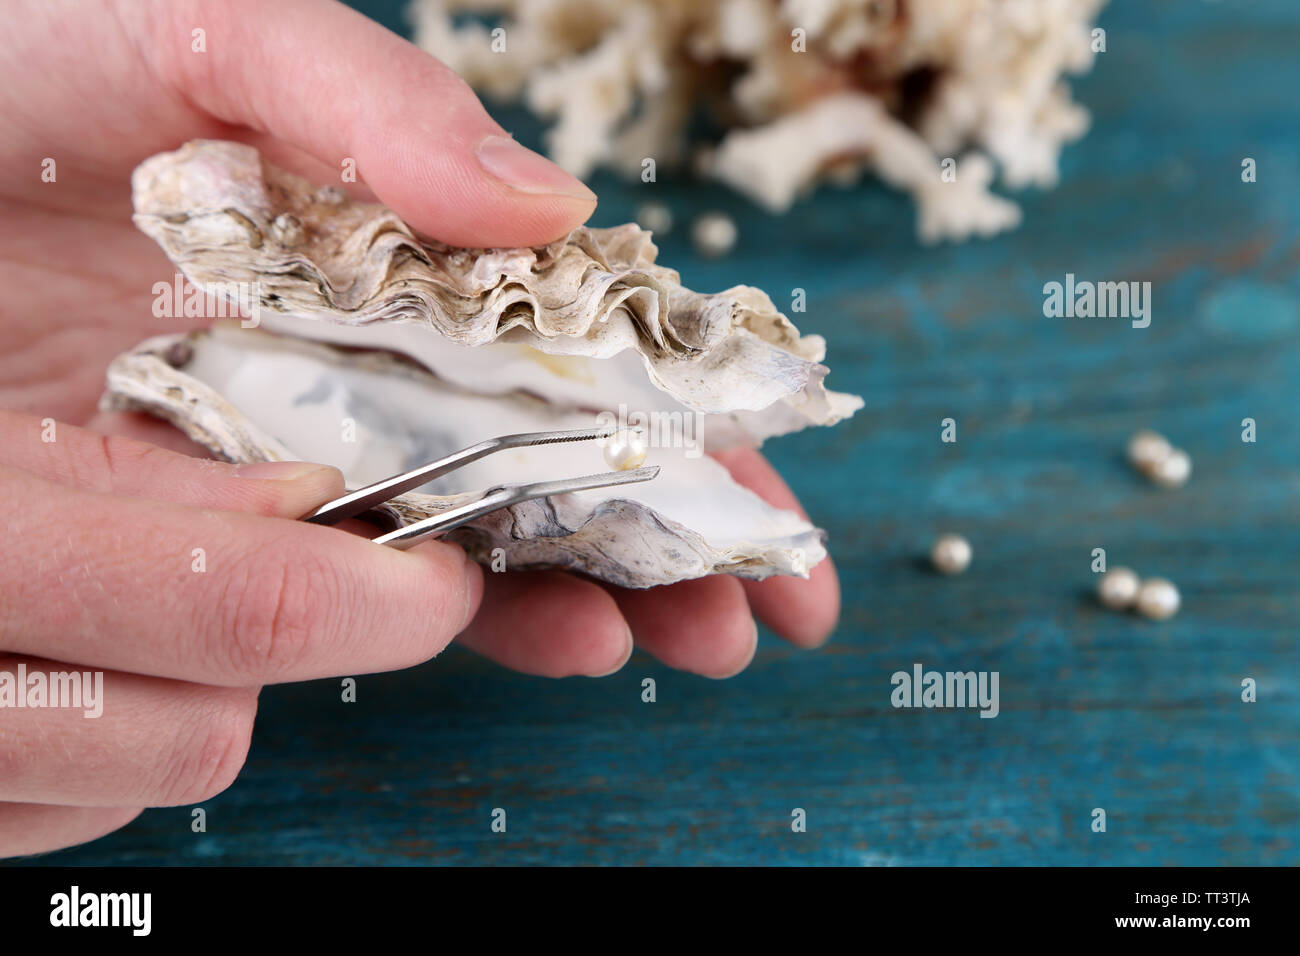 La main avec une pincette holding pearl oyster et sur fond de bois Banque D'Images